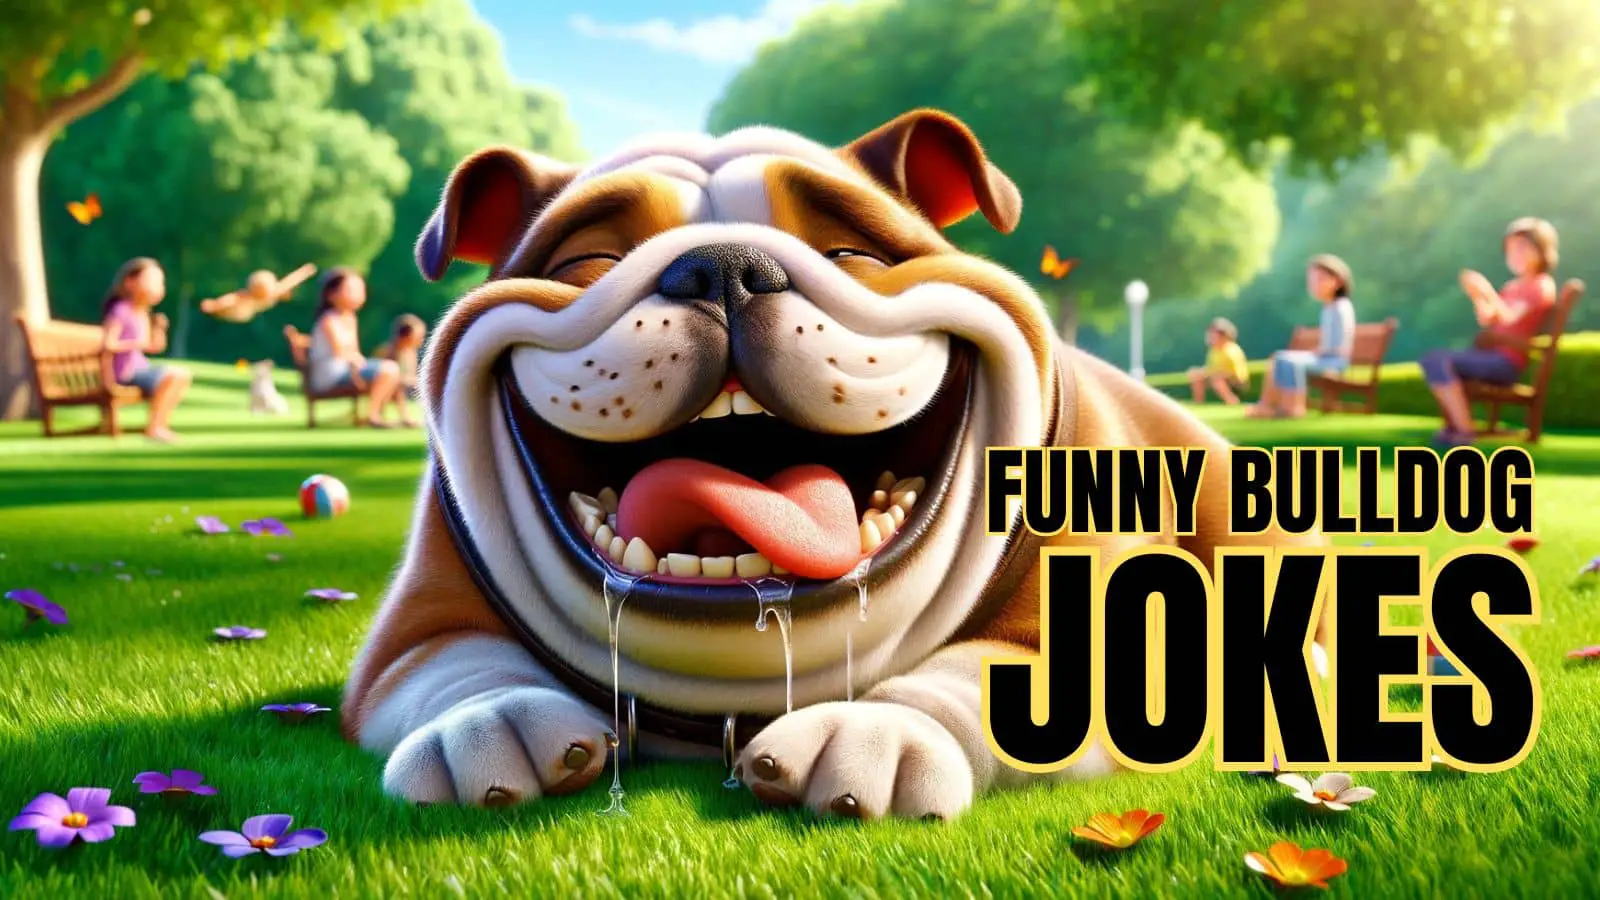 Funny Bulldog Jokes on Animal